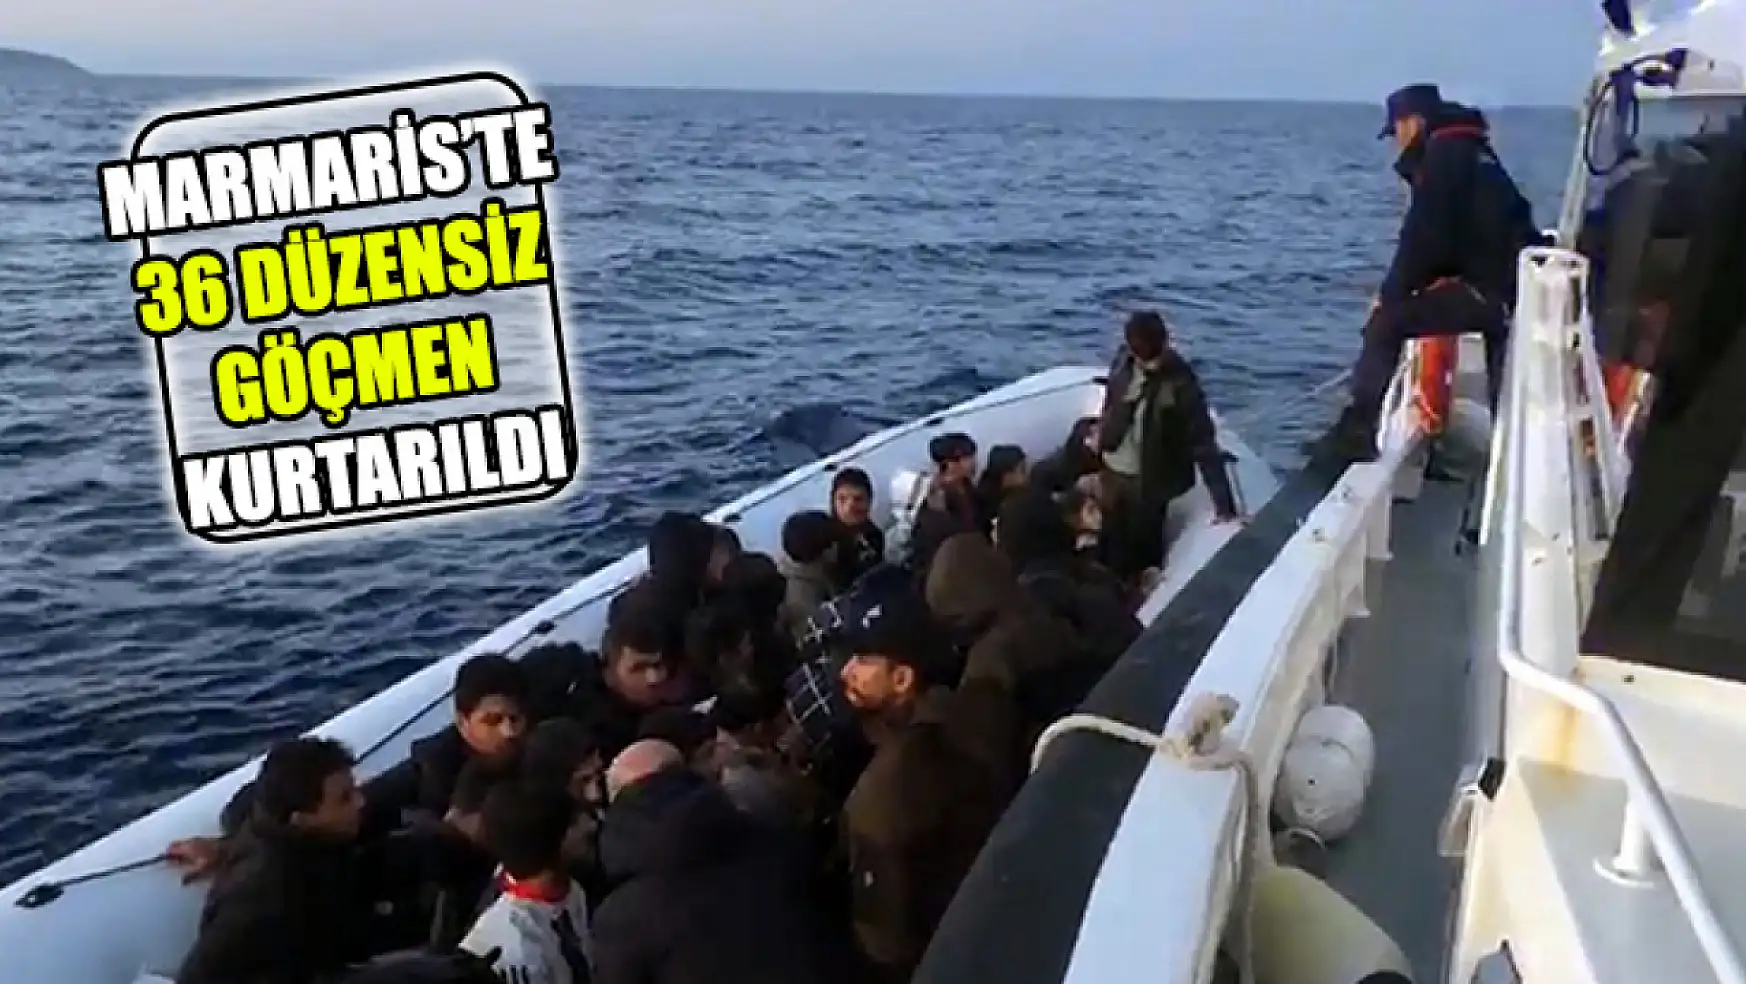 Marmaris'te 36 Düzensiz Göçmen Kurtarıldı